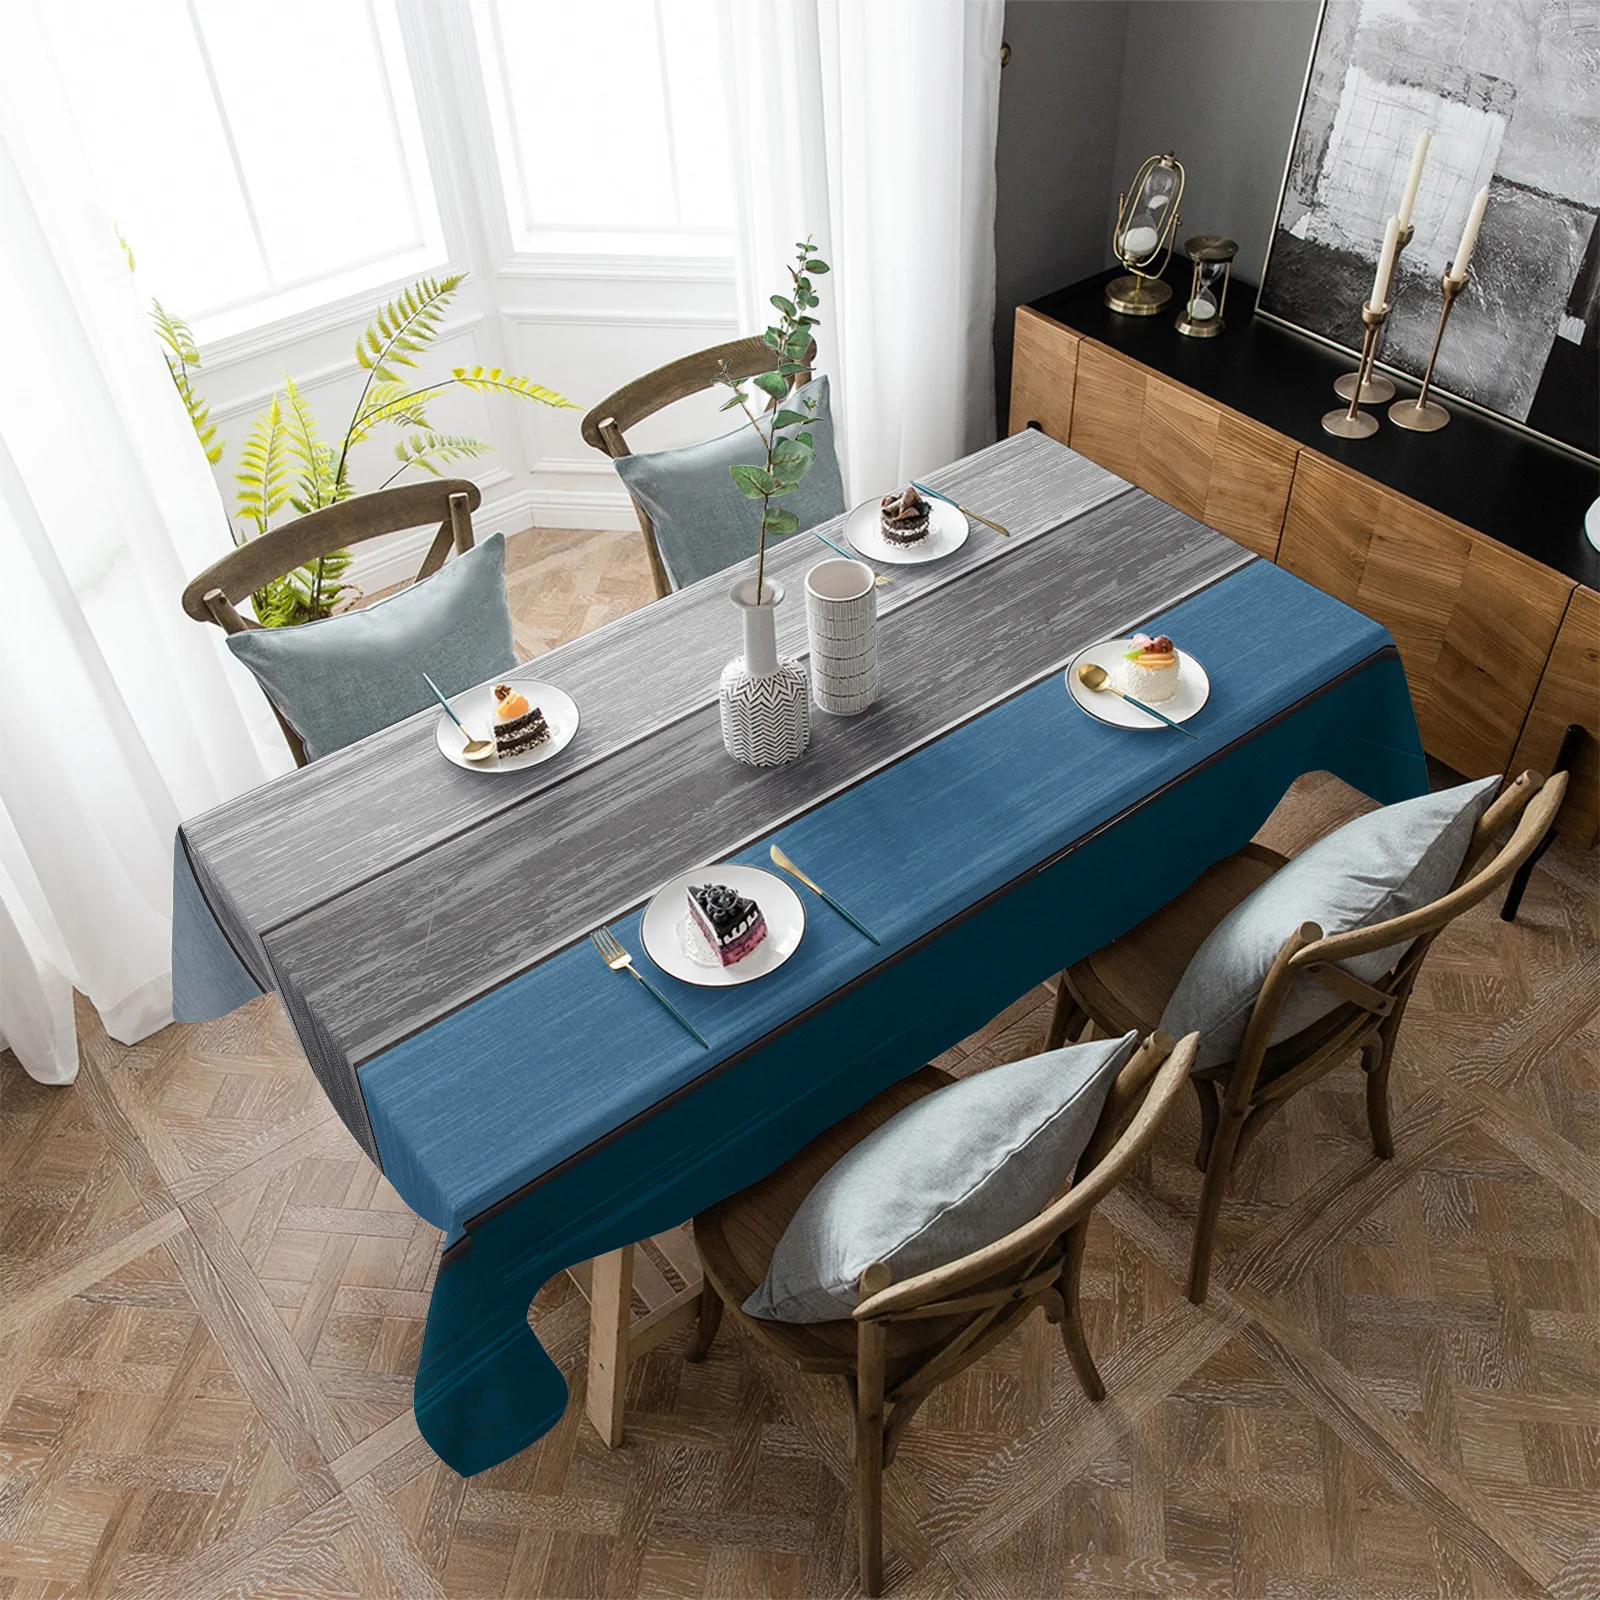 

Водонепроницаемая скатерть в стиле ретро с градиентом, прямоугольная скатерть для стола с отделкой под дерево, сине-серого цвета, для украшения кухонного стола